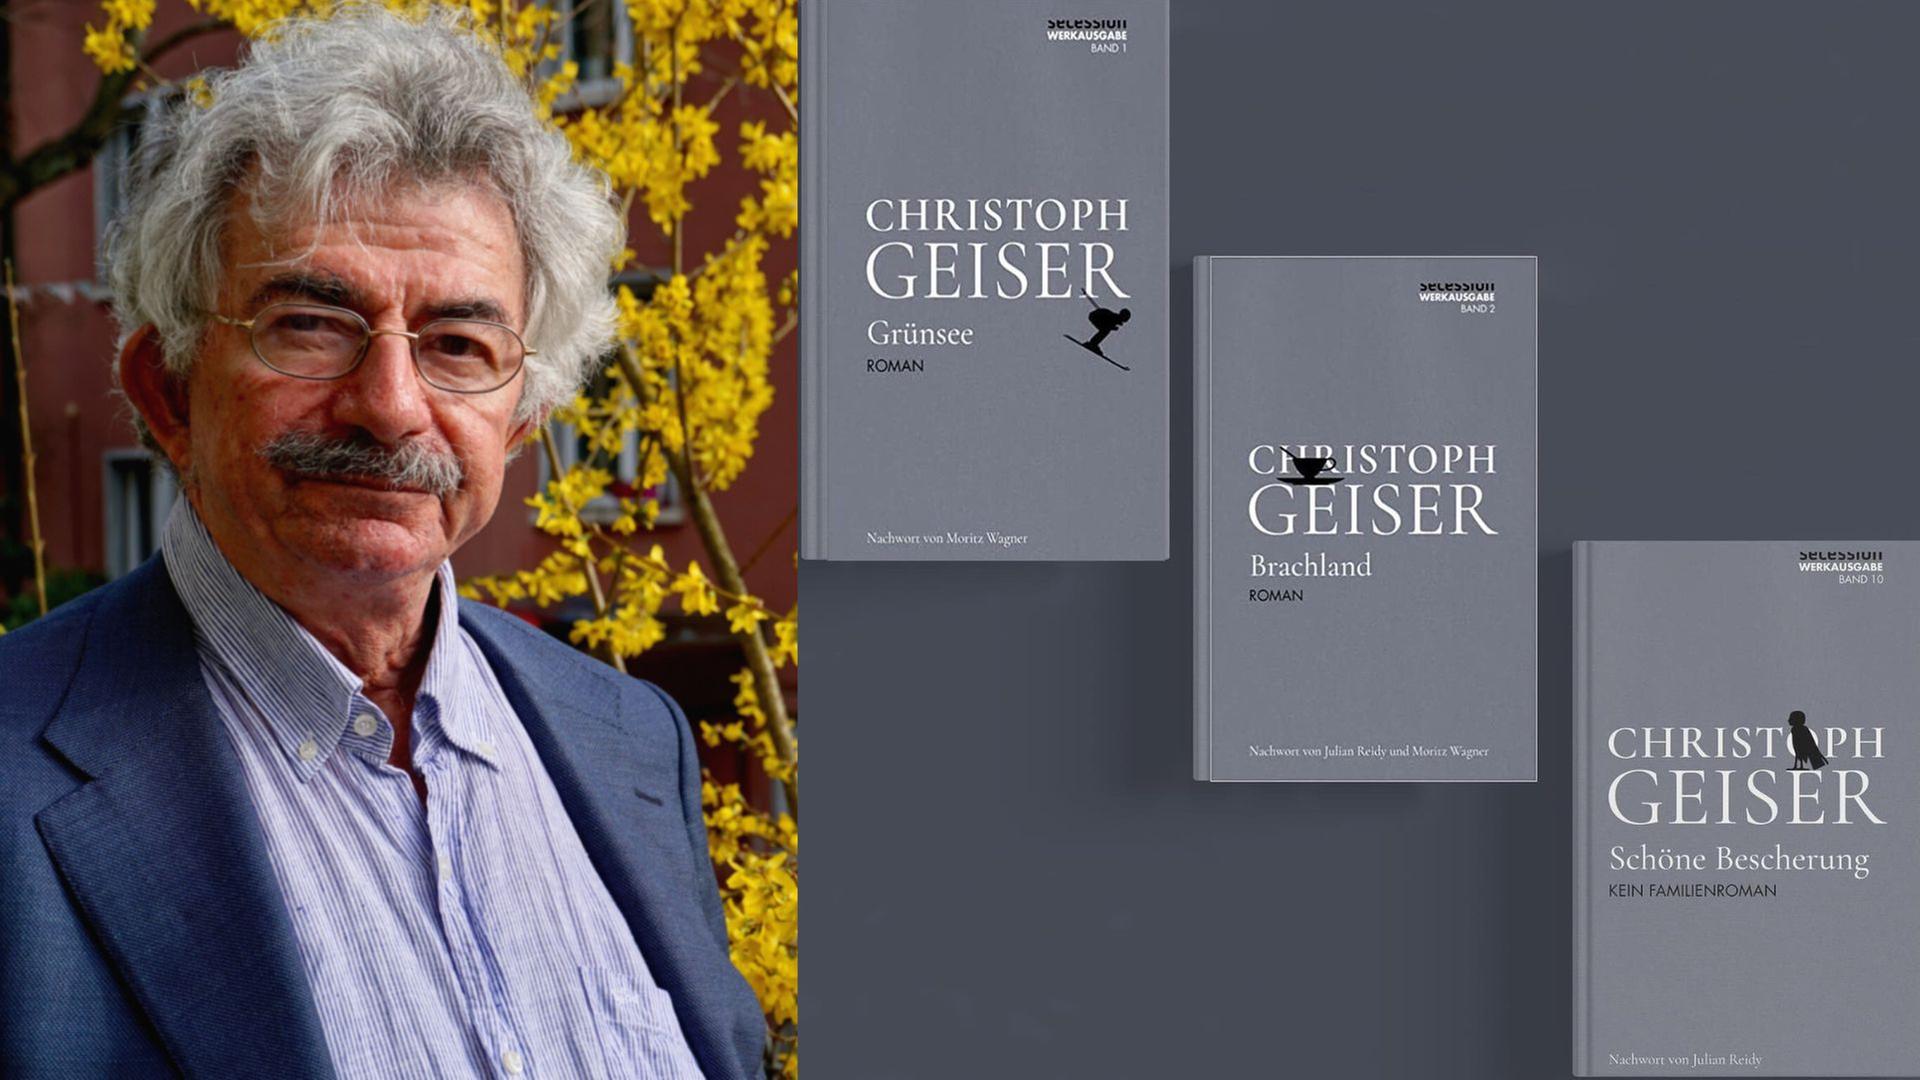 Christoph Geiser Werkausgabe: Die ersten Bände sind erschienen: „Grünsee“ (Band 1), „Brachland“ (Band 2) und „Schöne Bescherung. Kein Familienroman“ (Band 10)